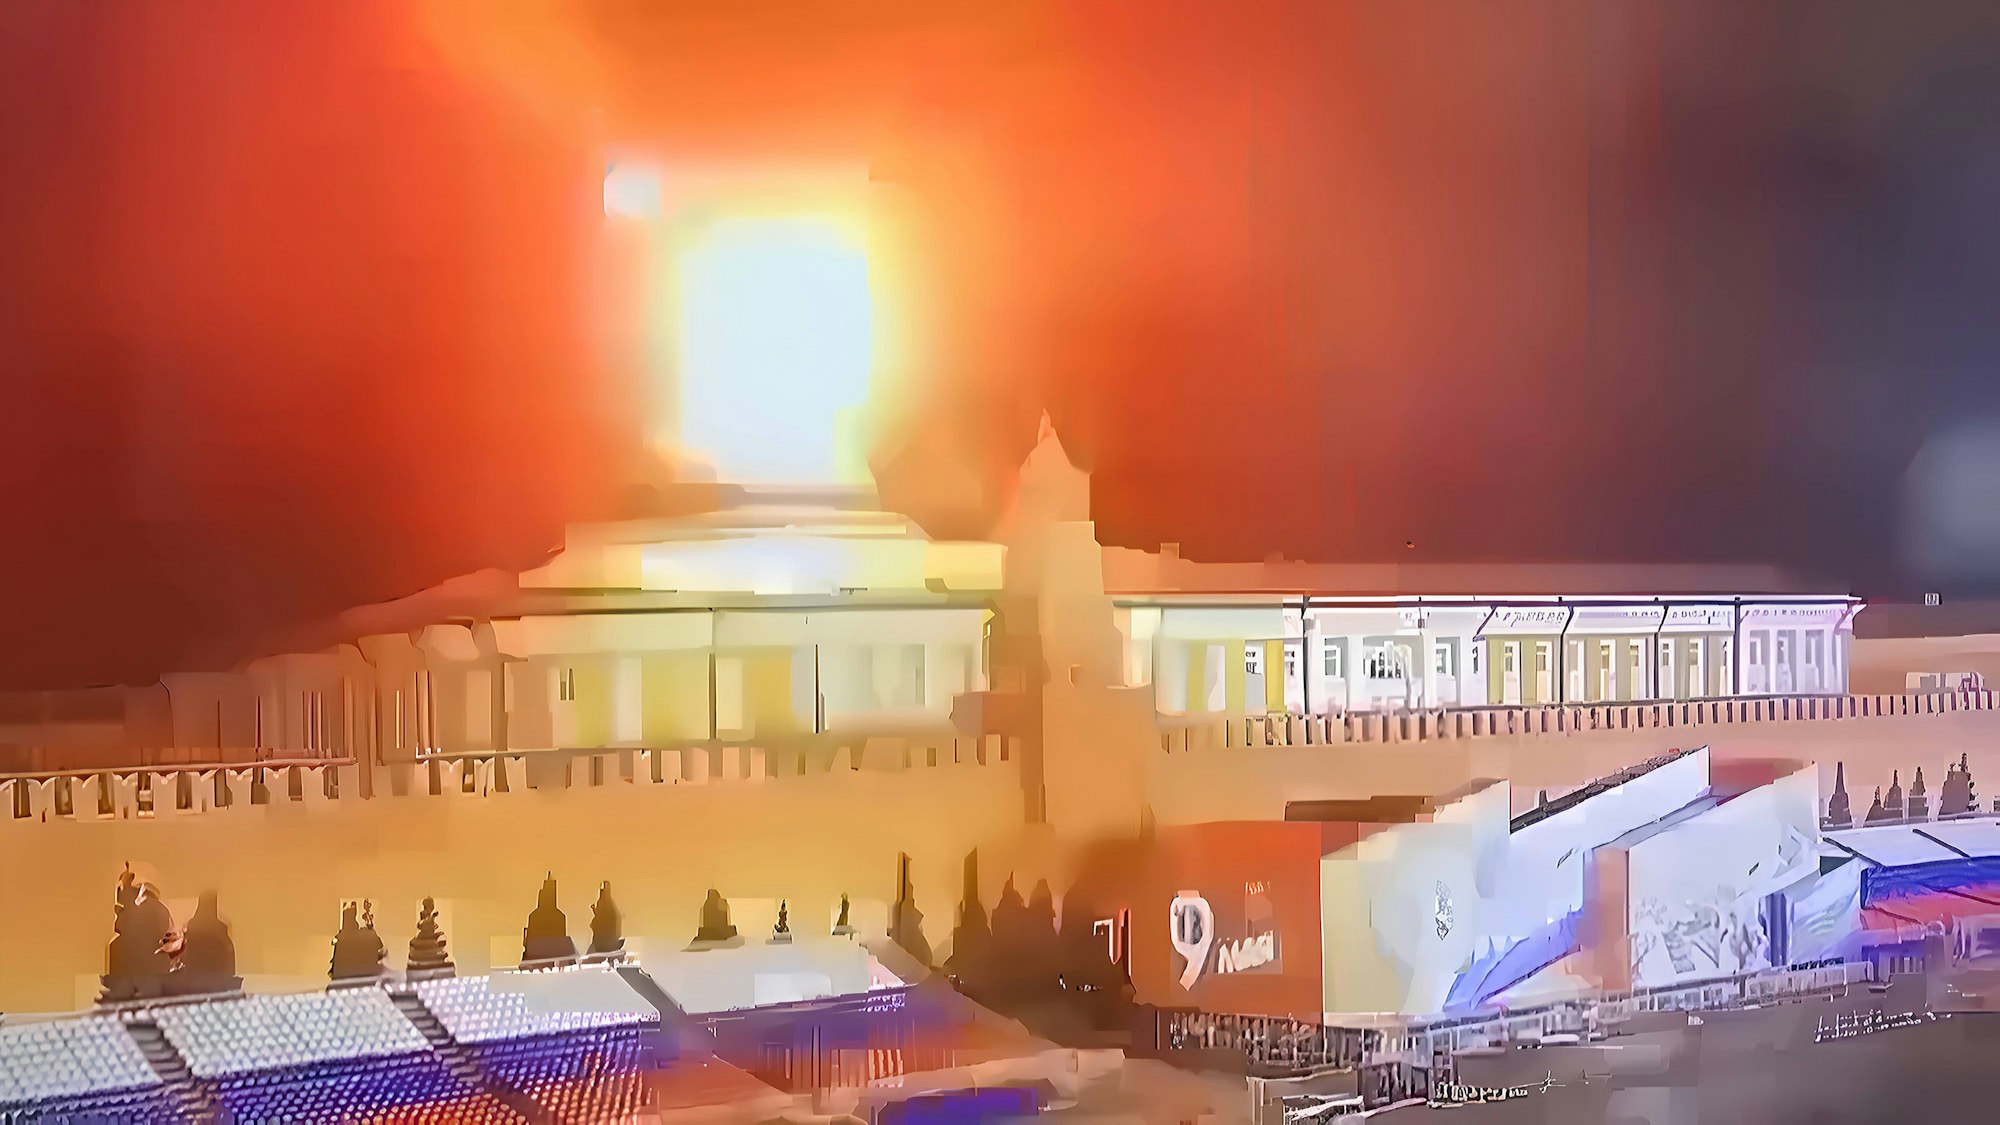 Dieses Bild einer Überwachungskamera in Moskau soll angeblich einen ukrainischen Drohnenangriff auf den Kreml zeigen. Kiew weist die Anschuldigungen aus Moskau vehement zurück.